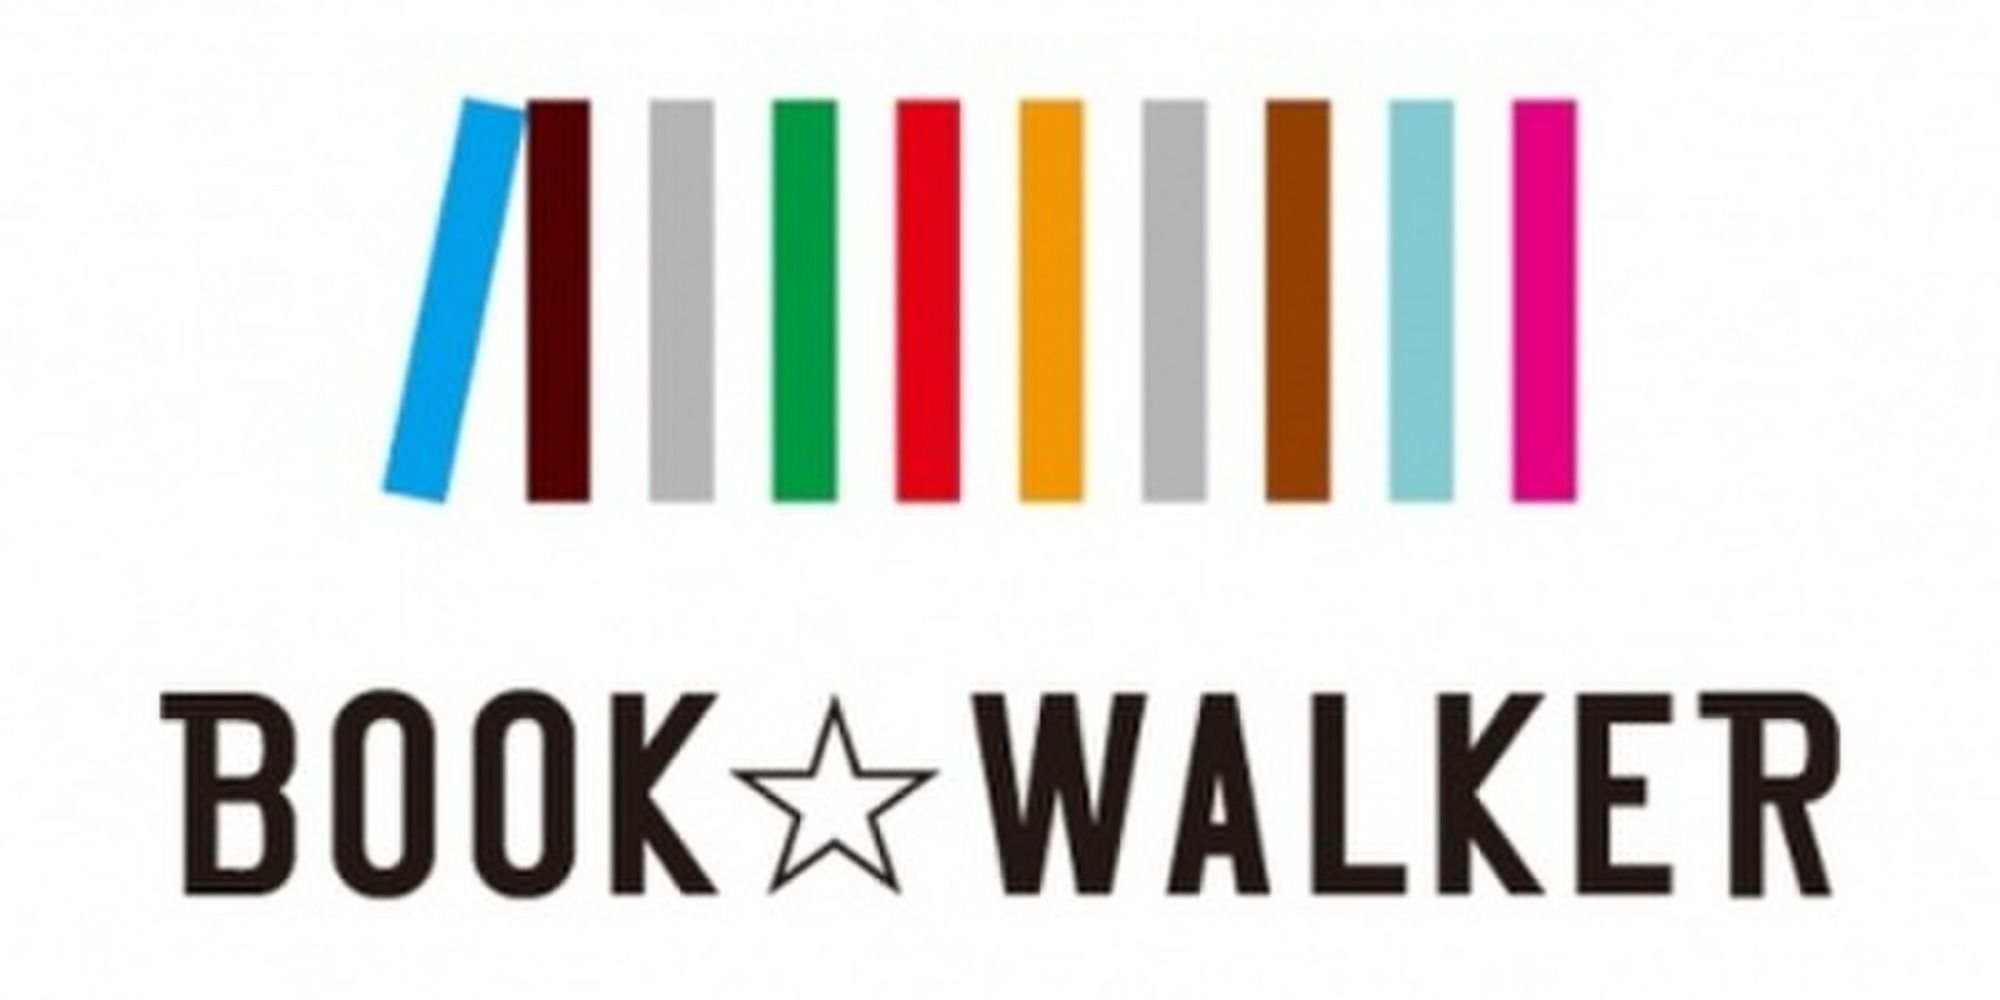 bookwalker logo